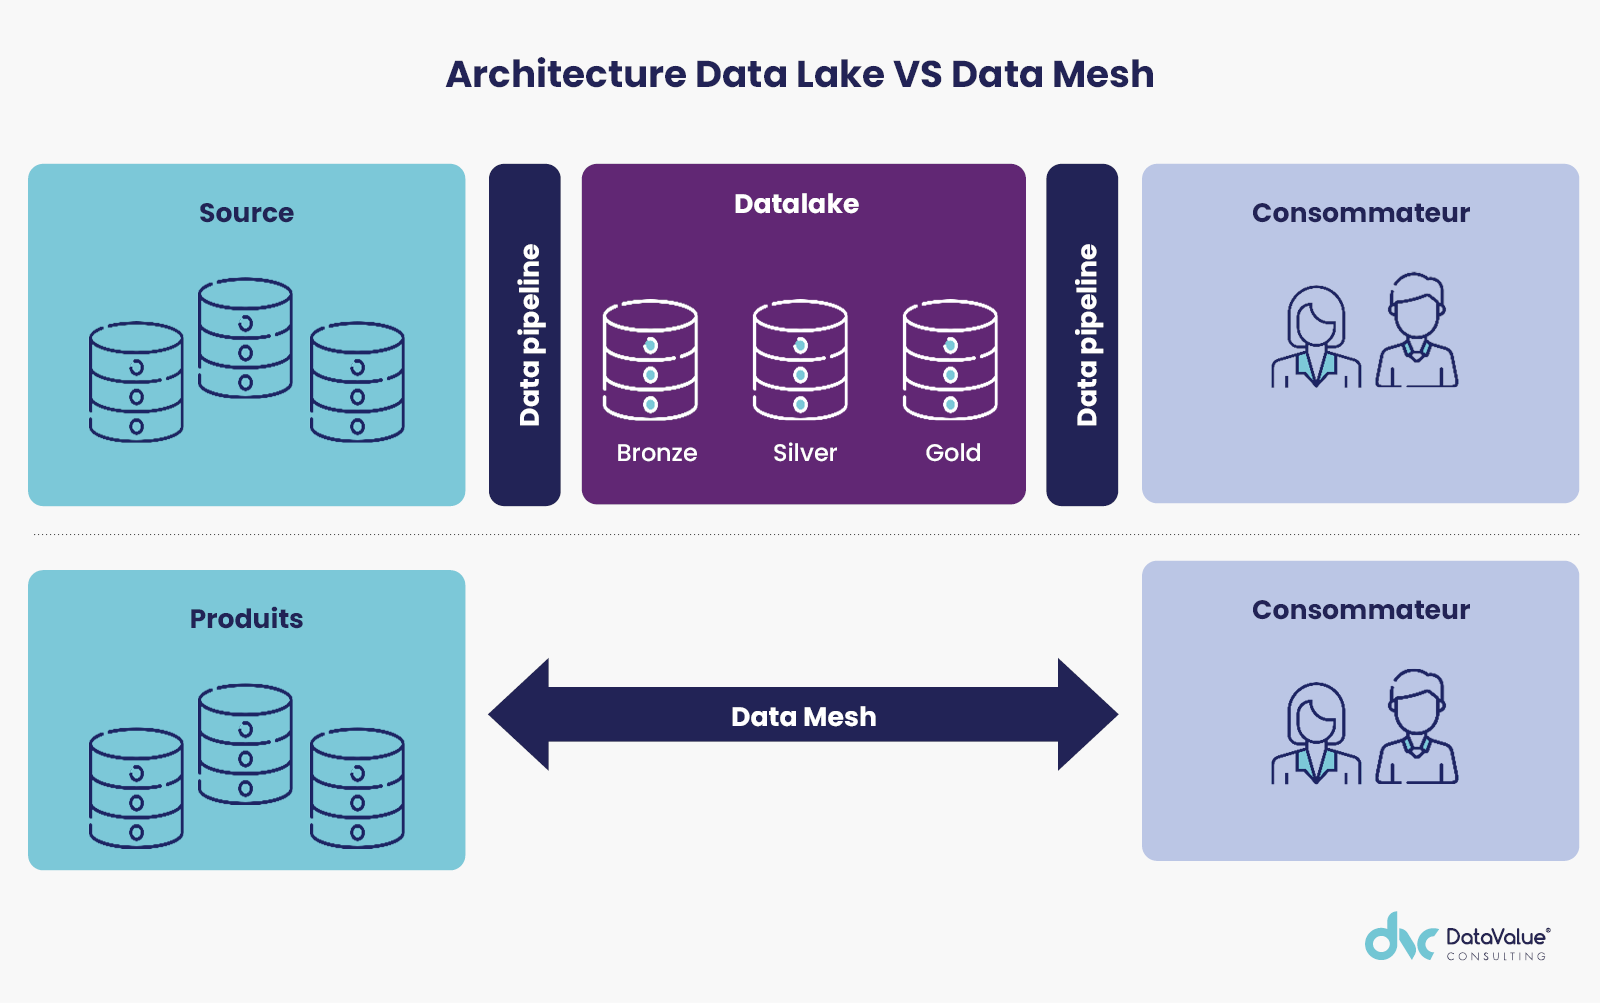 Architecture Data Lake VS Data Mesh